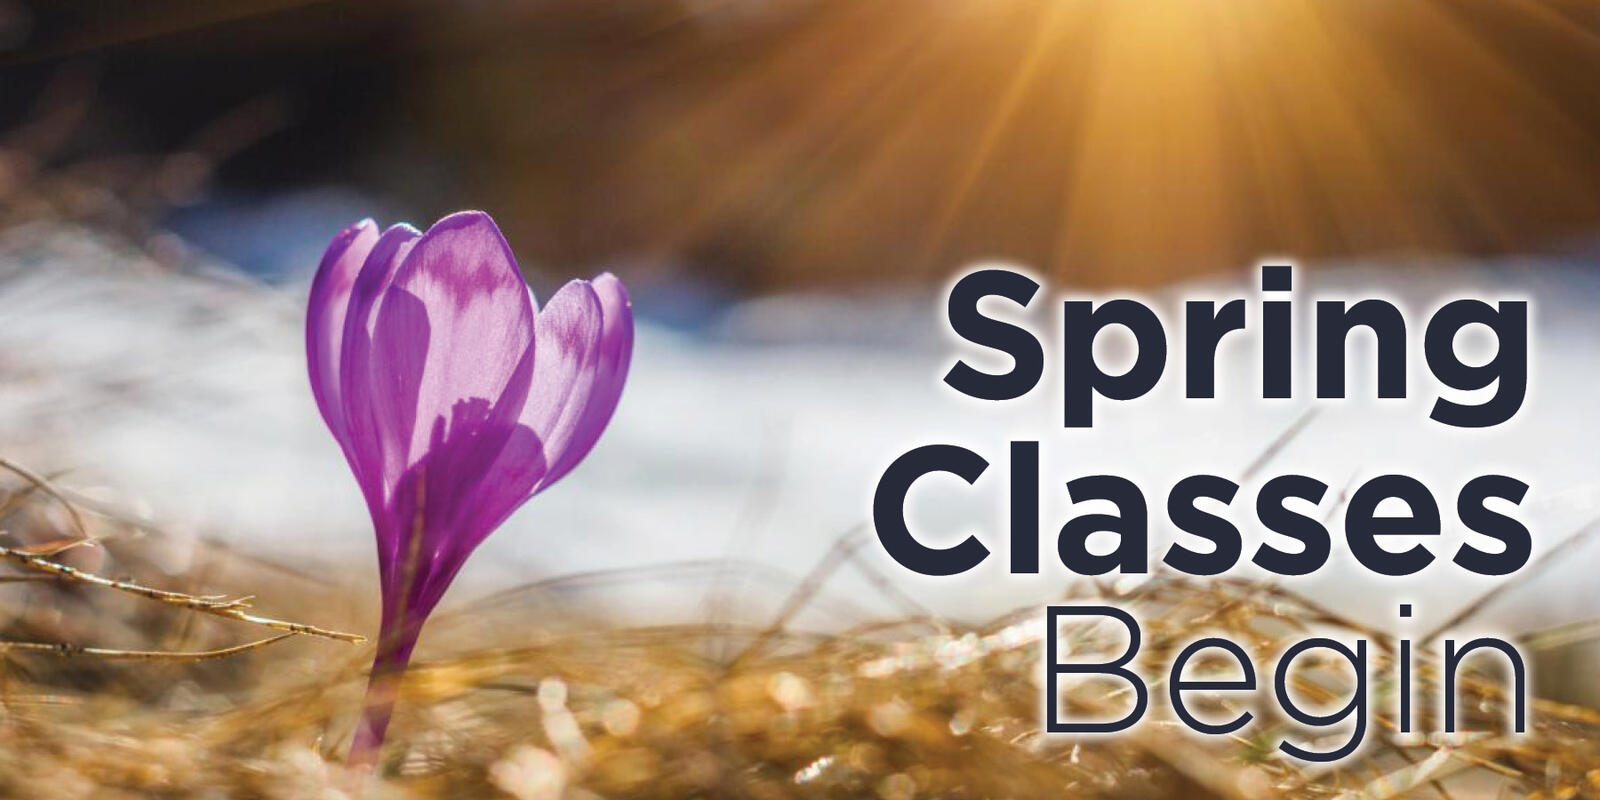 Springterm Classes Begin Advising Resources